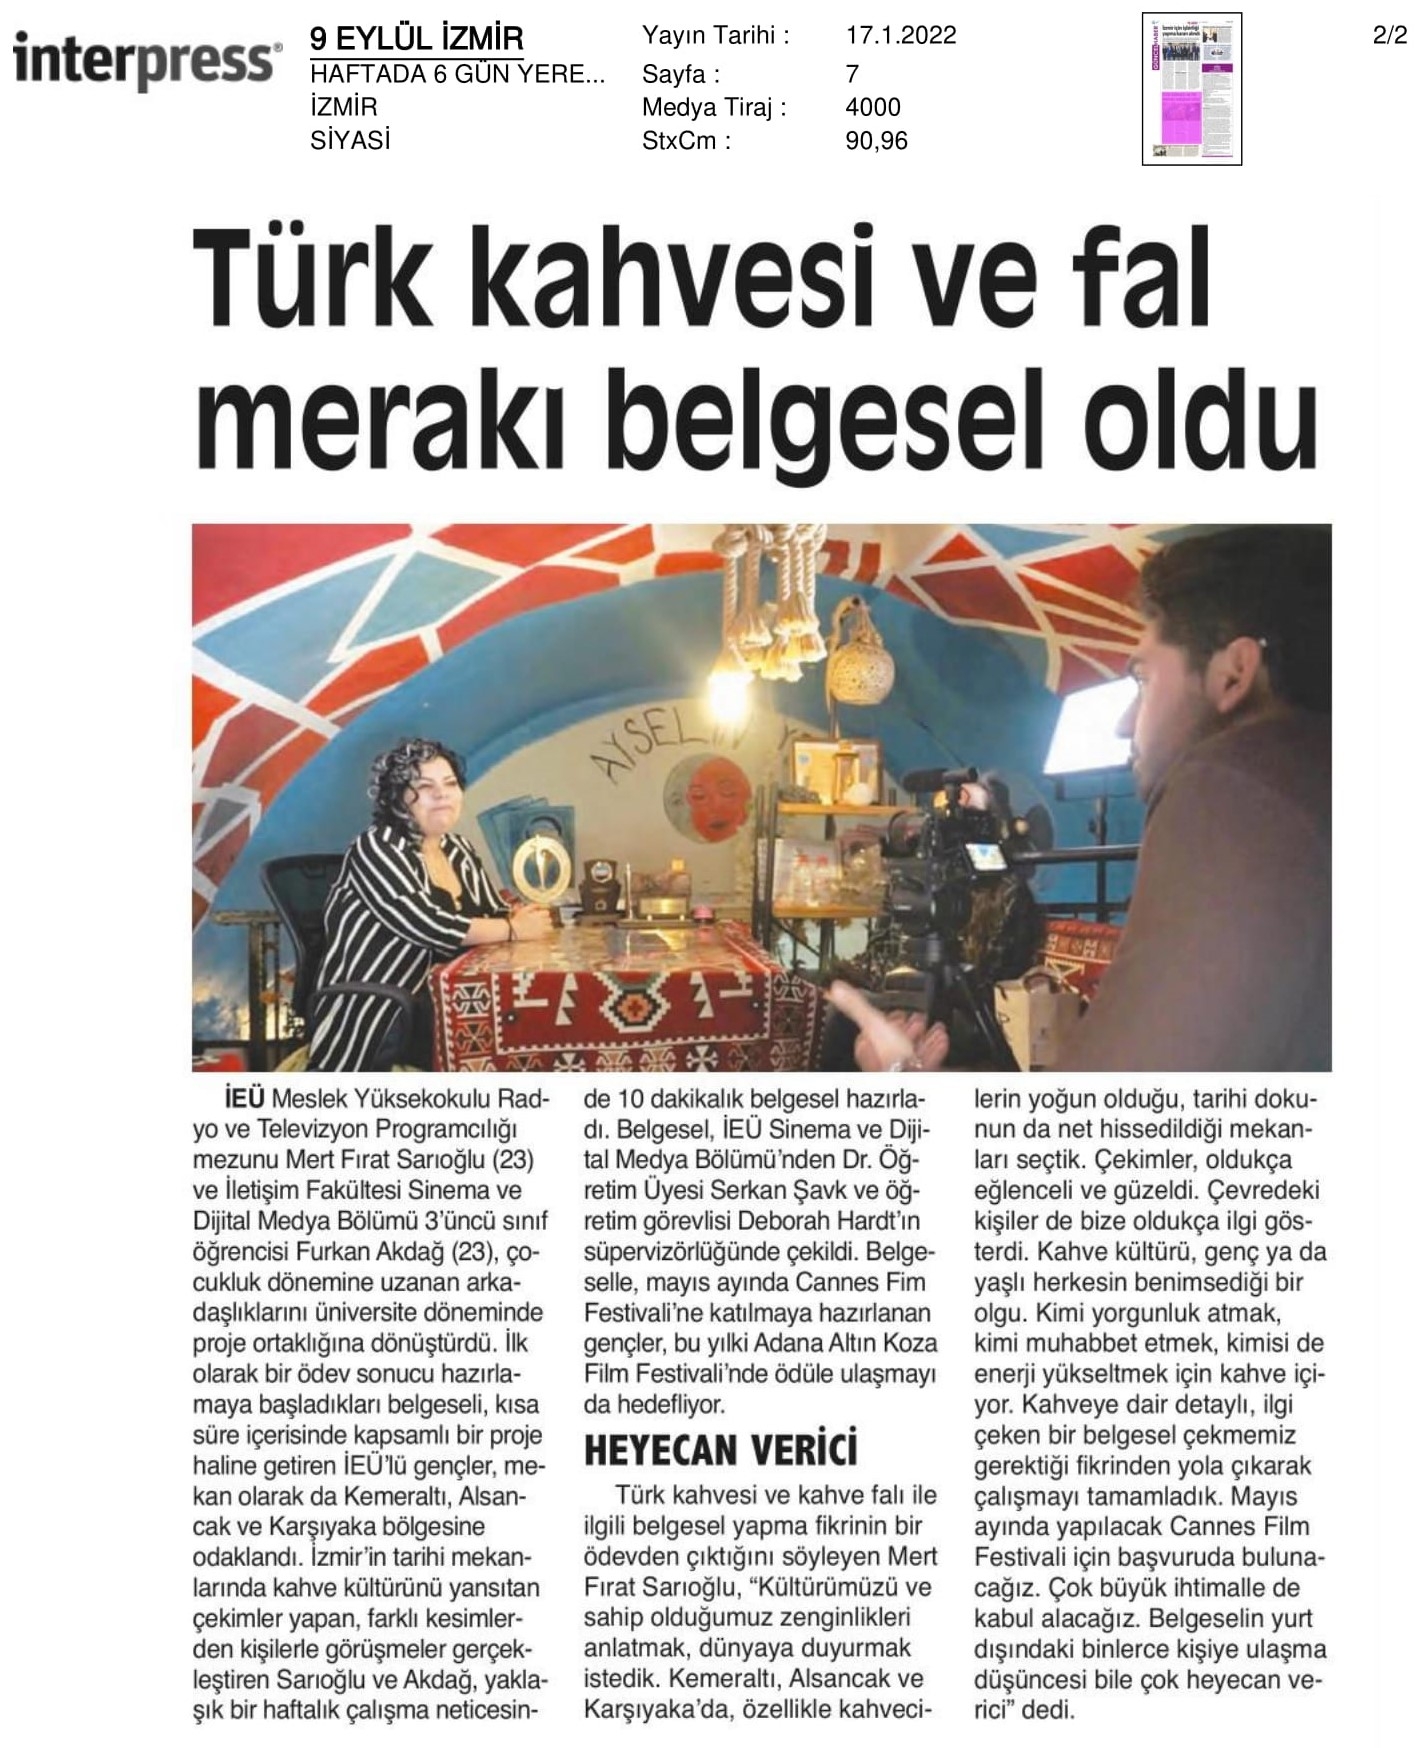 ‘Türk kahvesi’ ve ‘fal merakı’ belgesel oldu